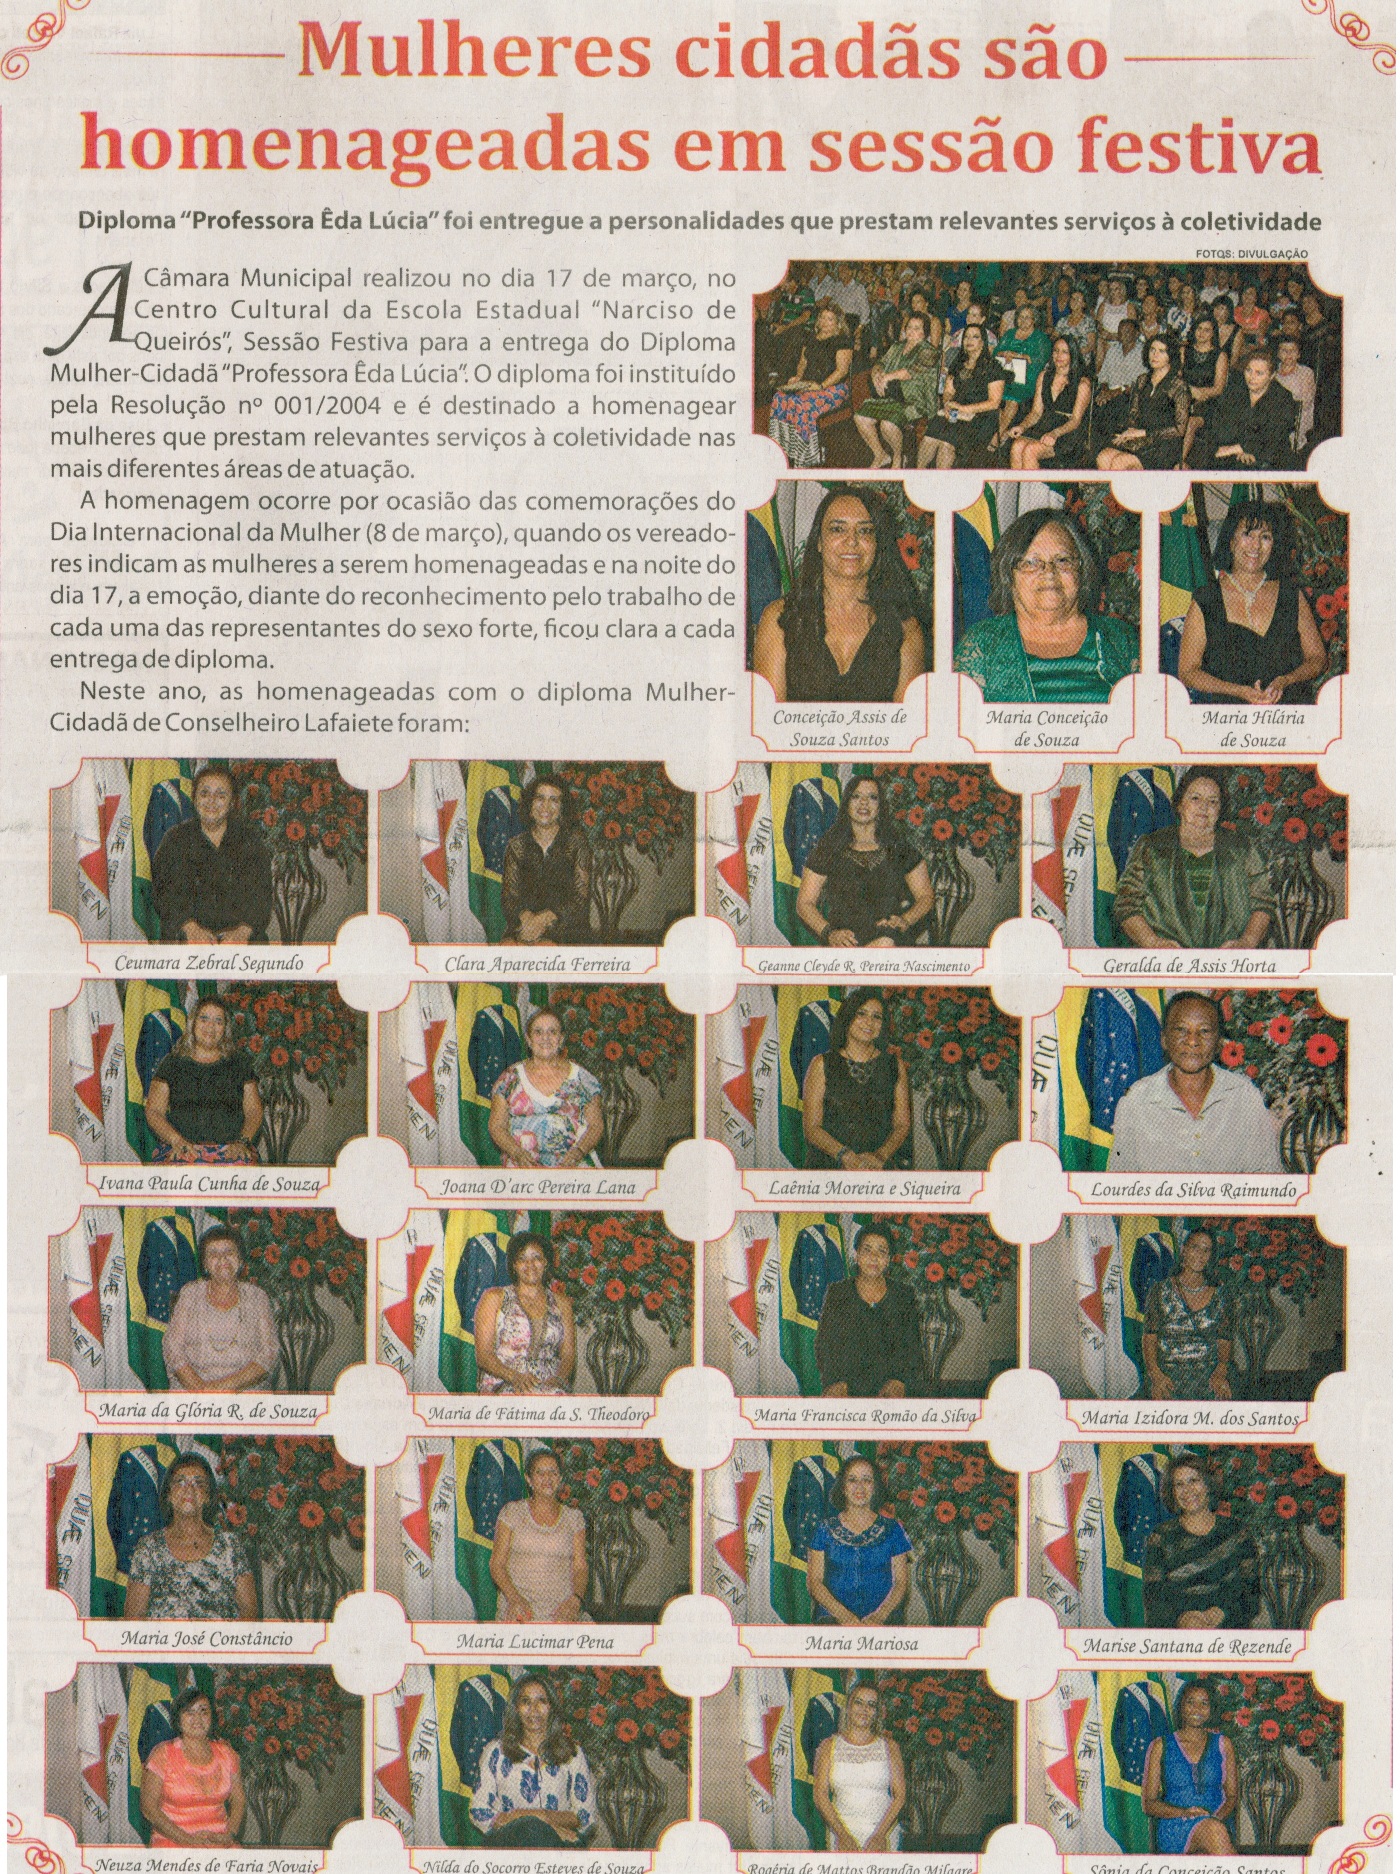 Mulheres são homenageadas em sessão festiva. Jornal Correio da Cidade, Conselheiro Lafaiete, 02 a 08 abr. 2016, 1311ª ed., Caderno Cultura, p. 1.